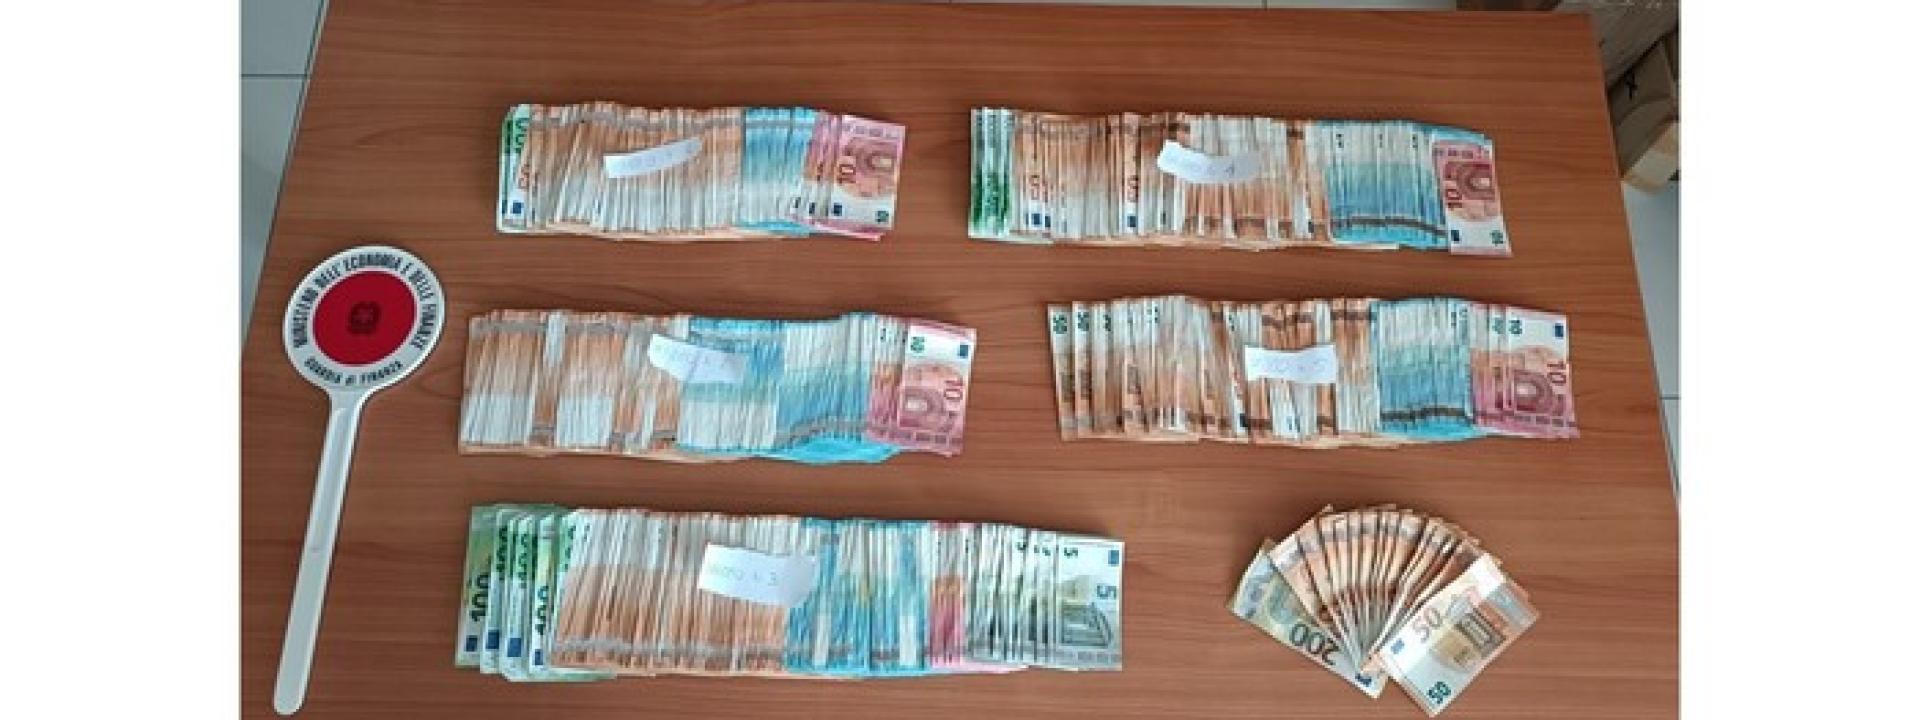 Marche - Blitz della Finanza, in casa del pusher albanese trovati 53mila euro in contanti